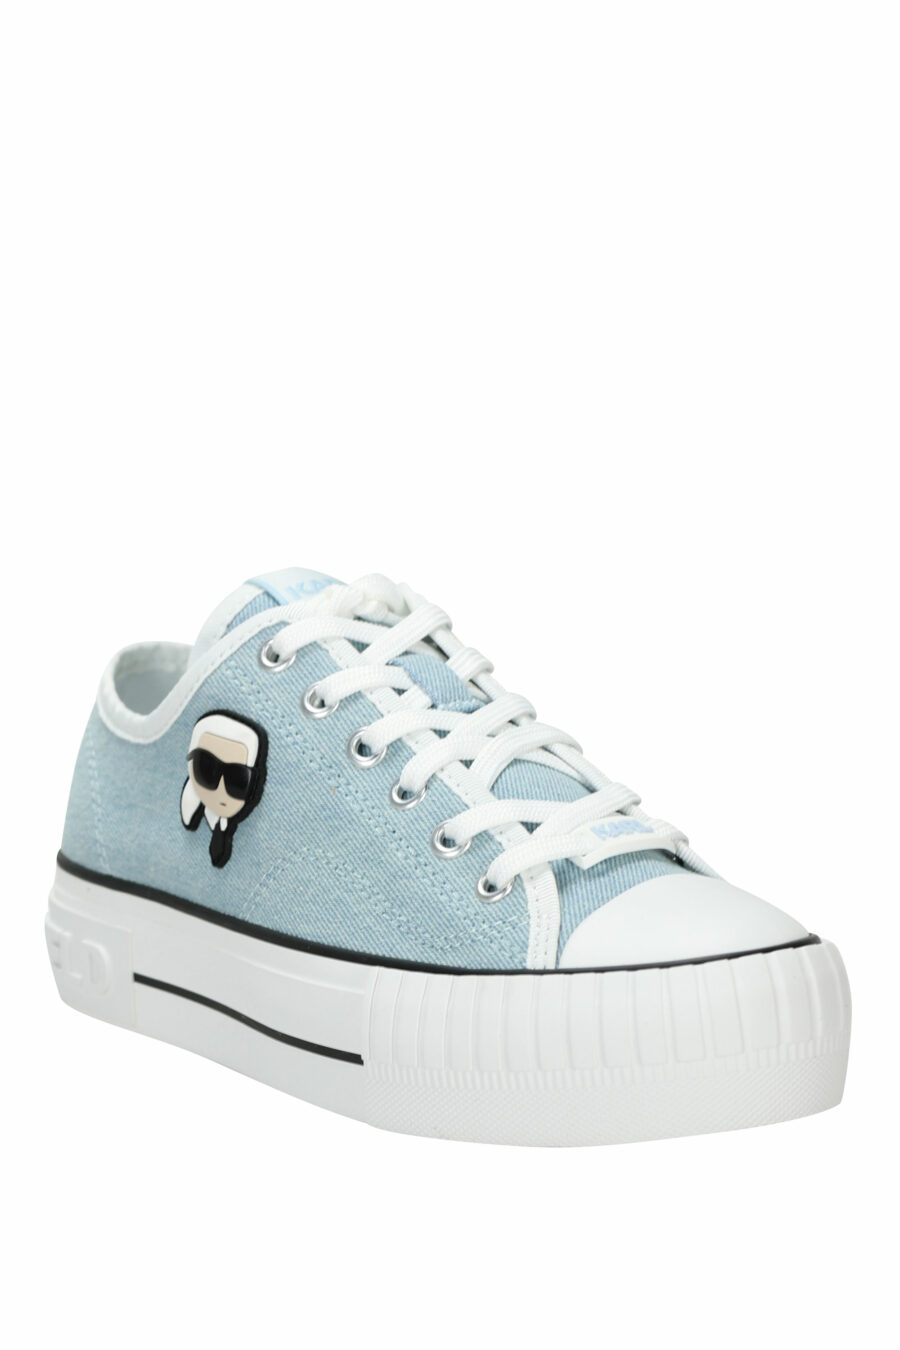 Zapatillas azul claro estilo "converse" con minilogo de goma "karl" - 5059529384691 1